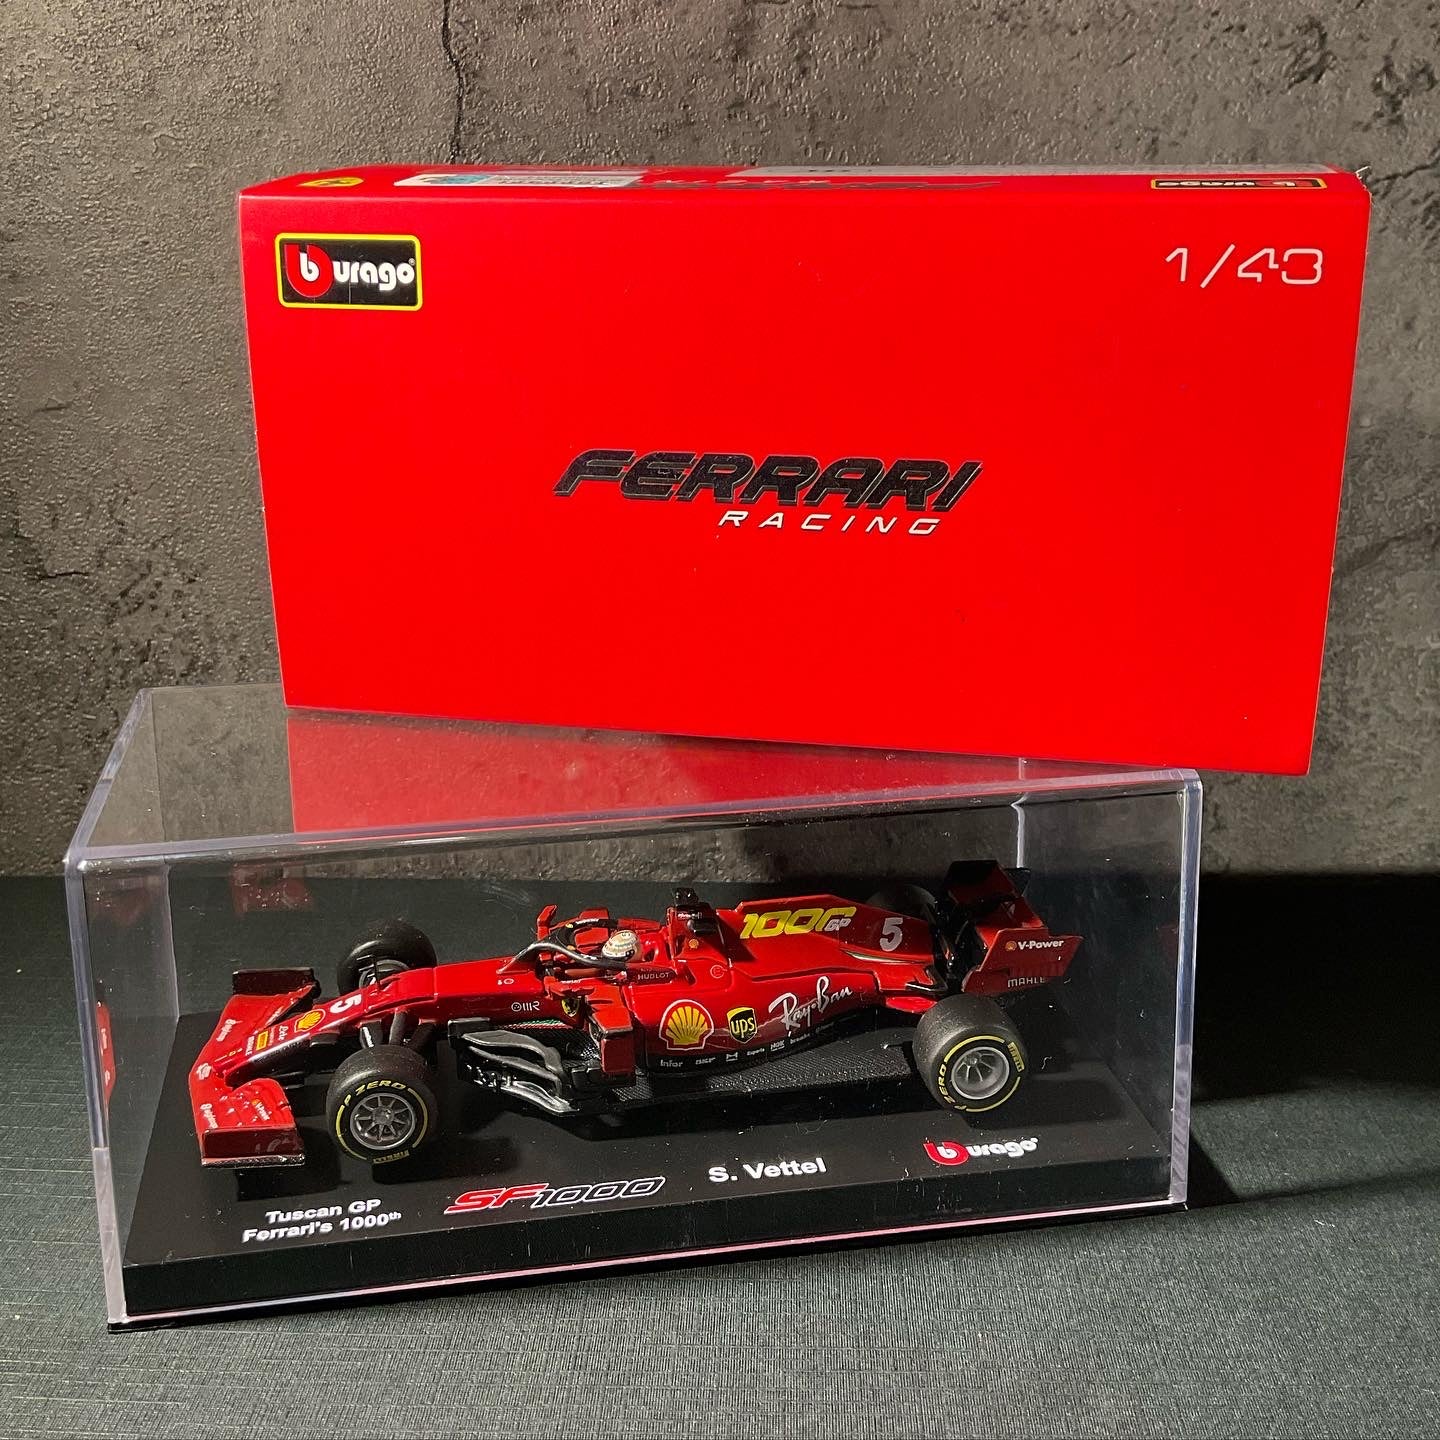 Scuderia Ferrari - SF1000 (2020) 1:43 (Tuscan Grand Prix - Ferrari's 1000th Special Edition) with Driver's Helmet | Showcase